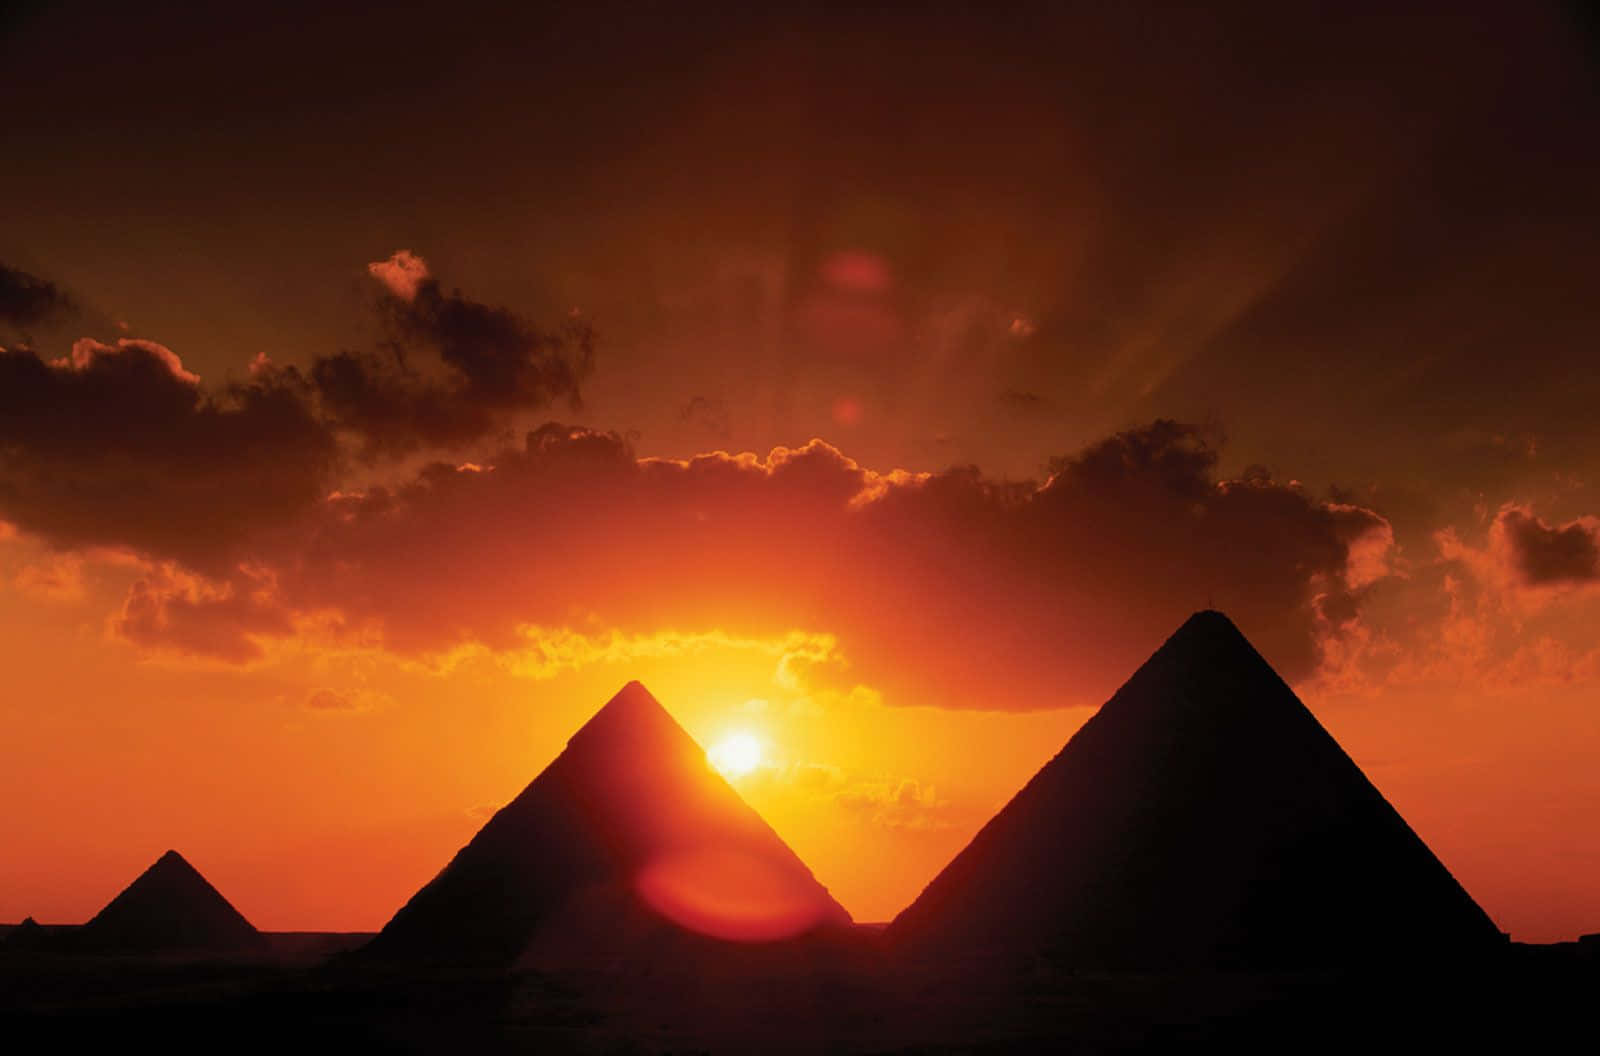 Lasilueta De Las Pirámides De Giza Al Atardecer. Fondo de pantalla